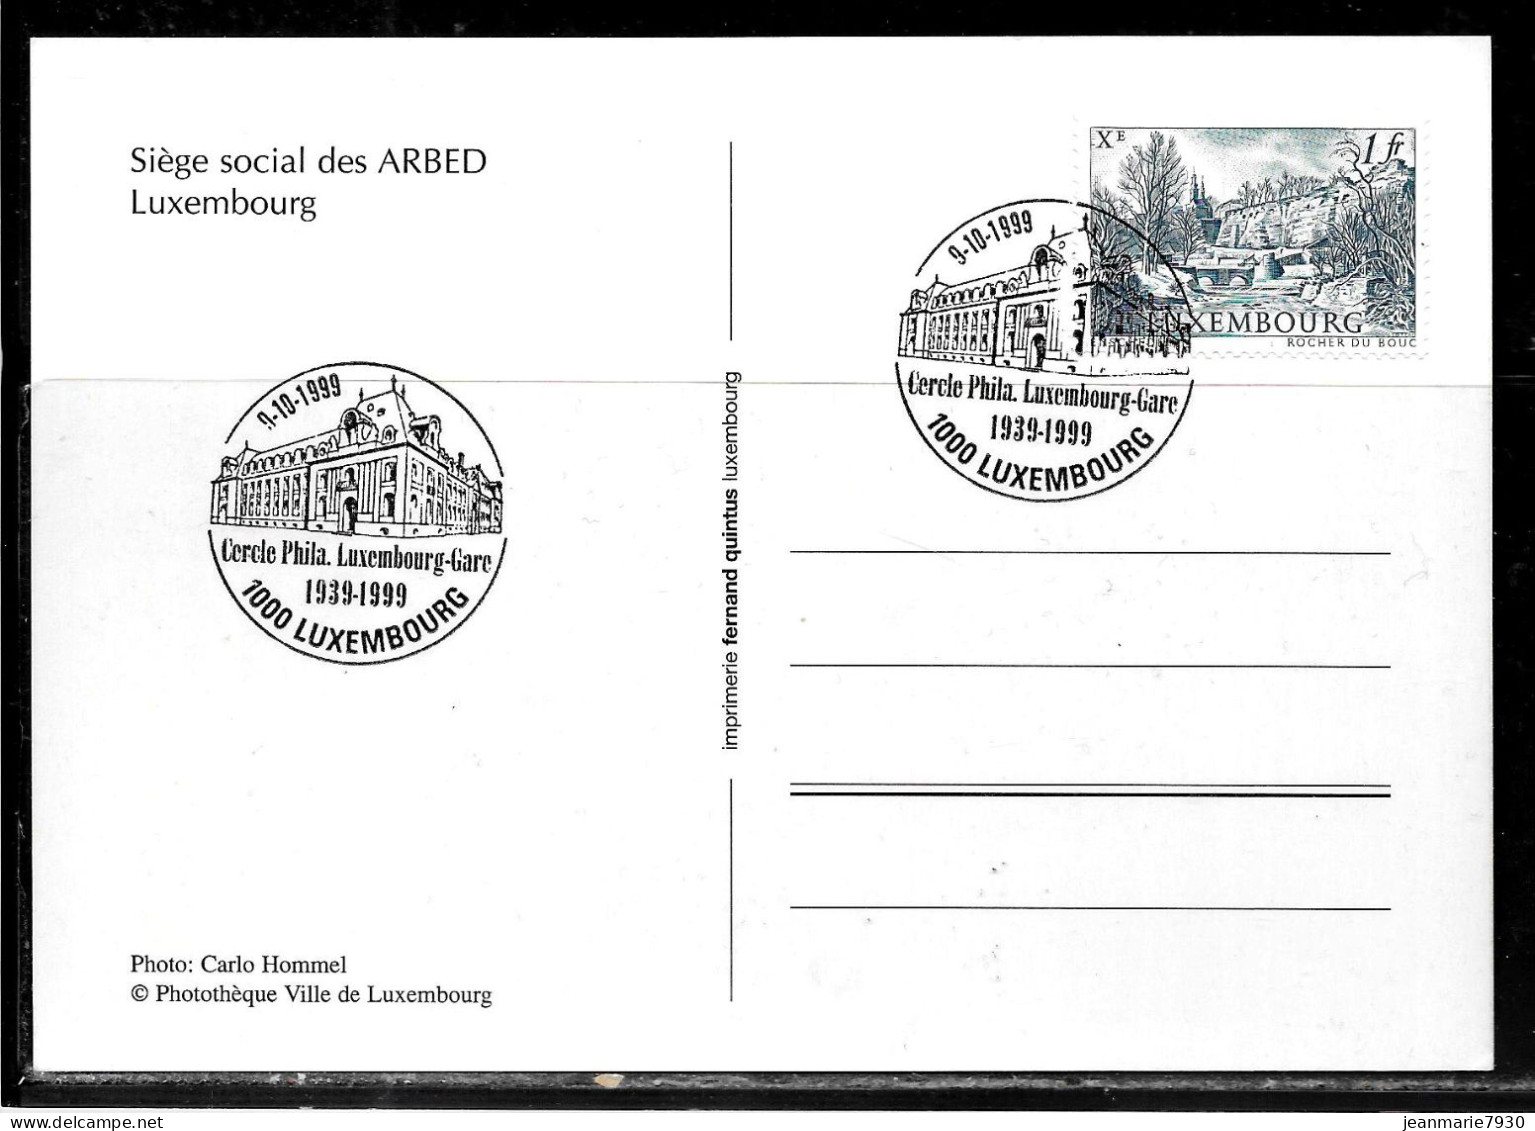 H366 - CARTE POSTALE DE LUXEMBOURG DU 09/10/99 - SIEGE DE L'ARBED - Briefe U. Dokumente